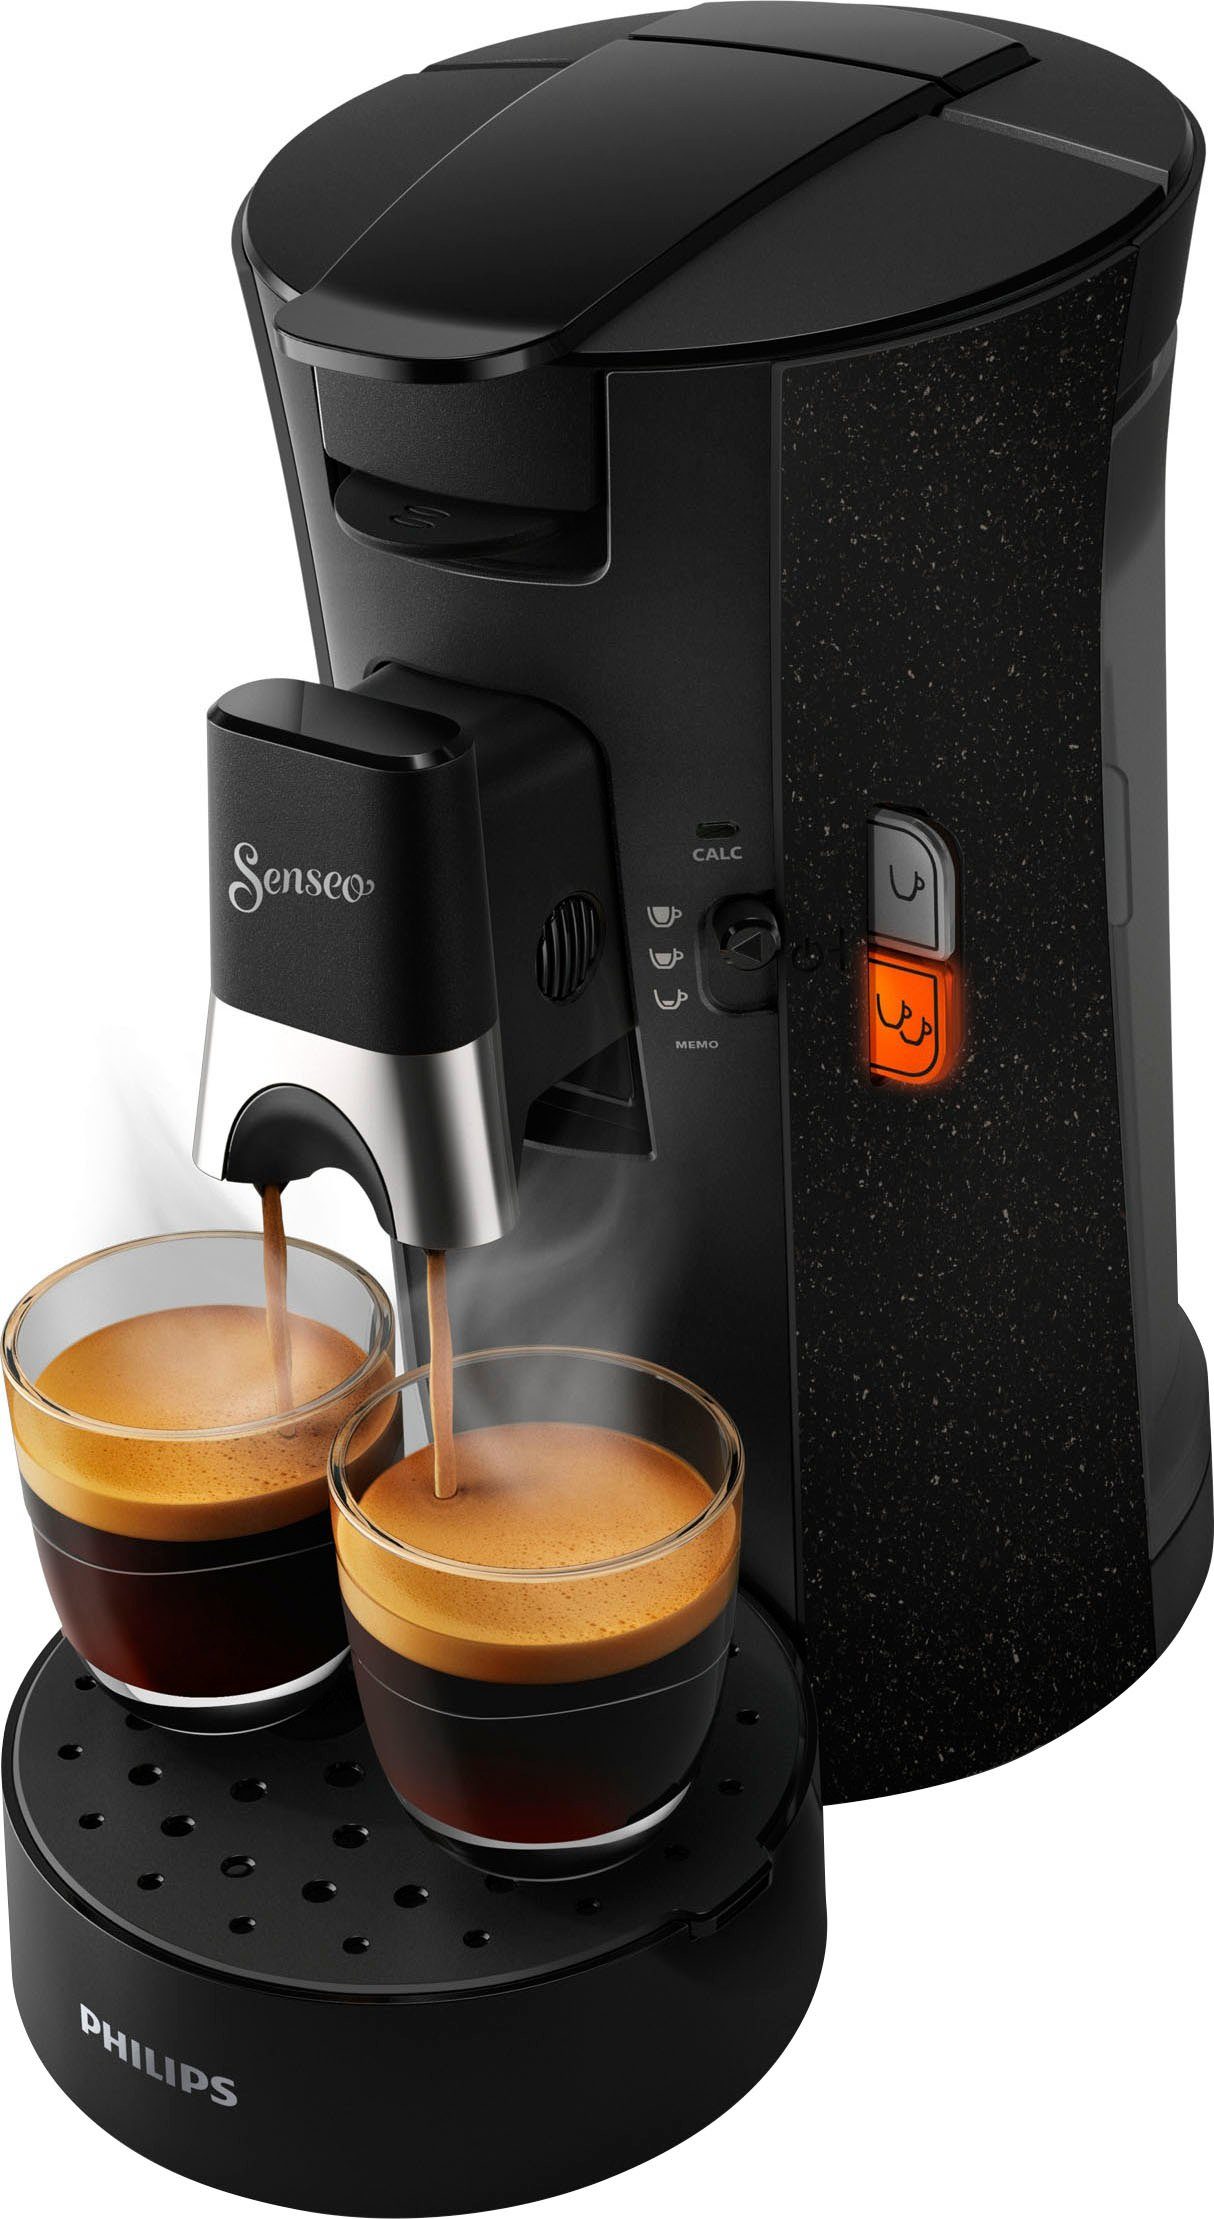 recyceltem Kaffeepadmaschine Select aus Philips +3 ECO (Wert CSA240/20, 37% Memo-Funktion, Gratis-Zugaben €14,-UVP) Plastik, Senseo Kaffeespezialitäten,